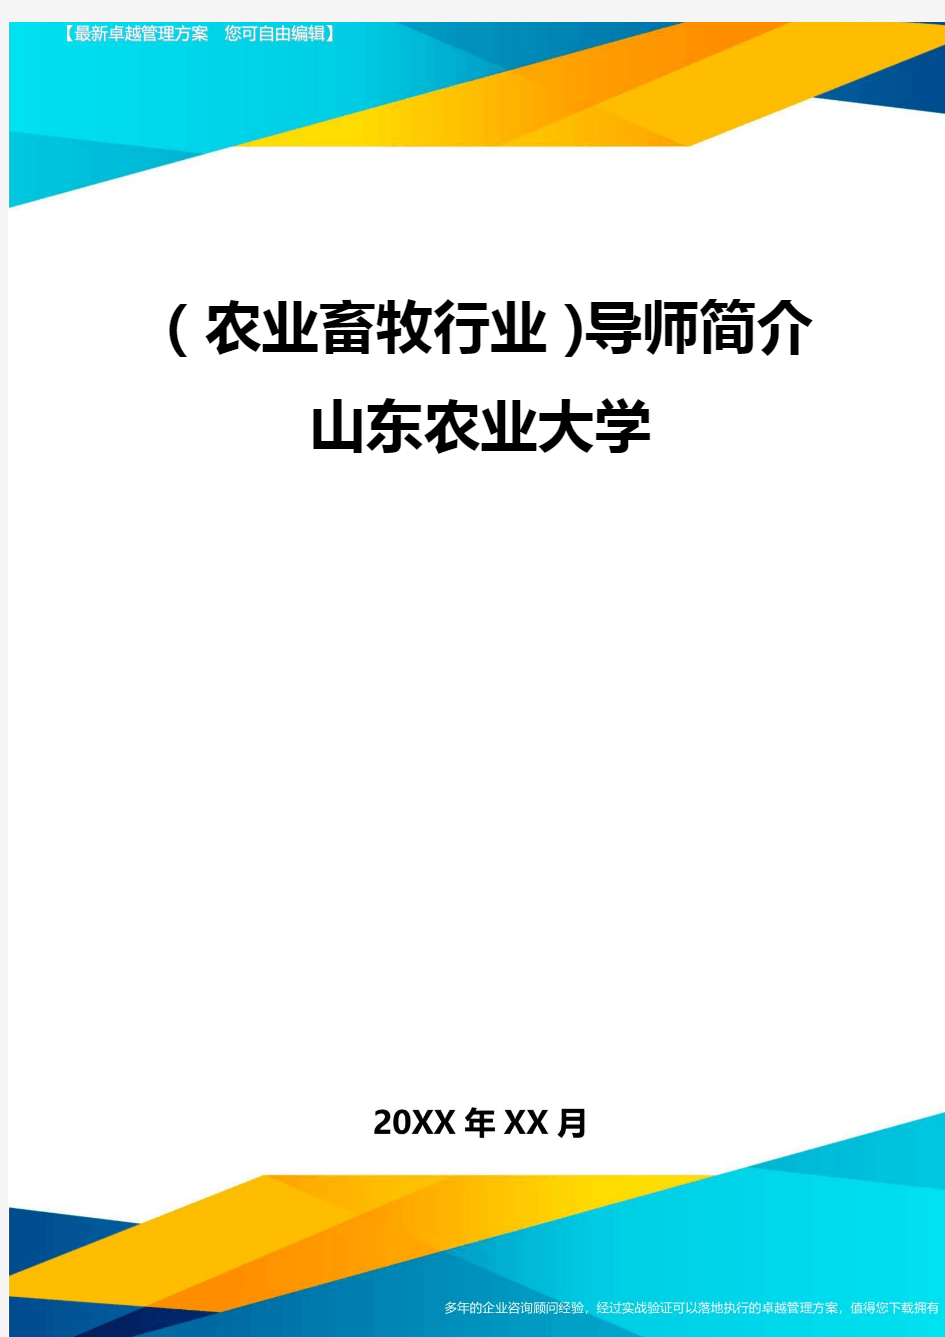 (2020年)(农业畜牧行业)导师简介山东农业大学精编